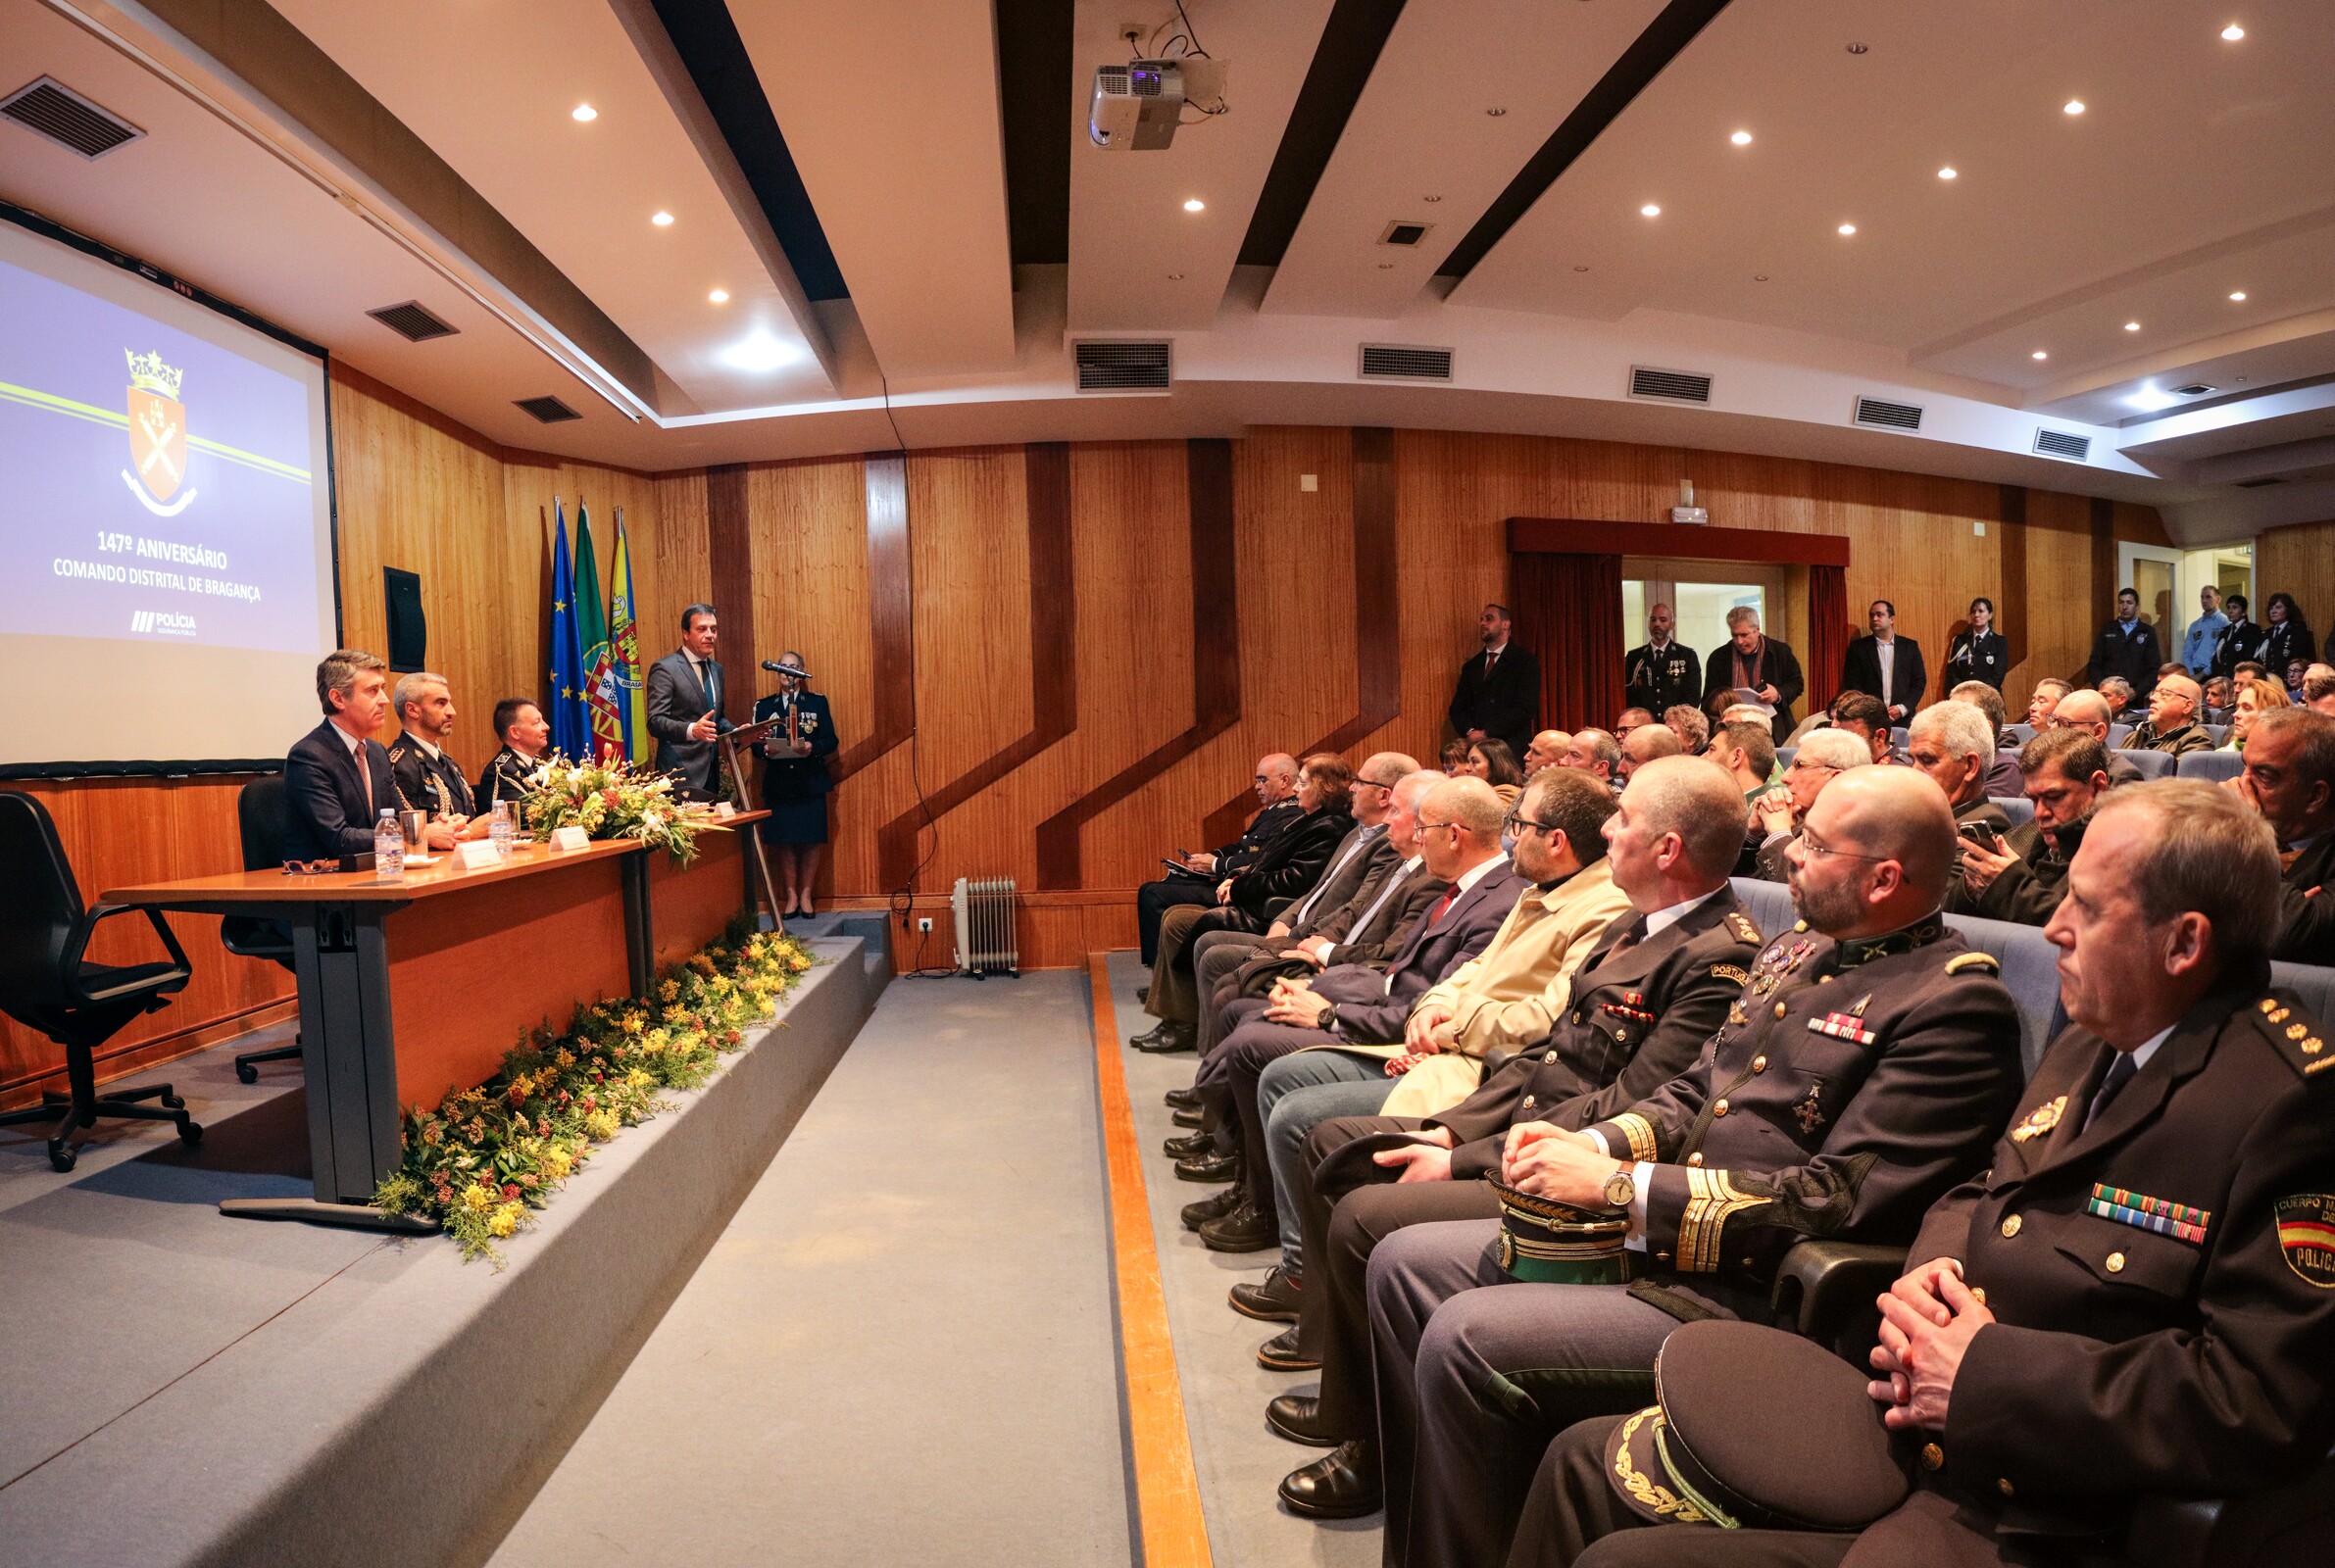 147.º Aniversário do Comando Distrital da Polícia de Segurança Pública de Bragança